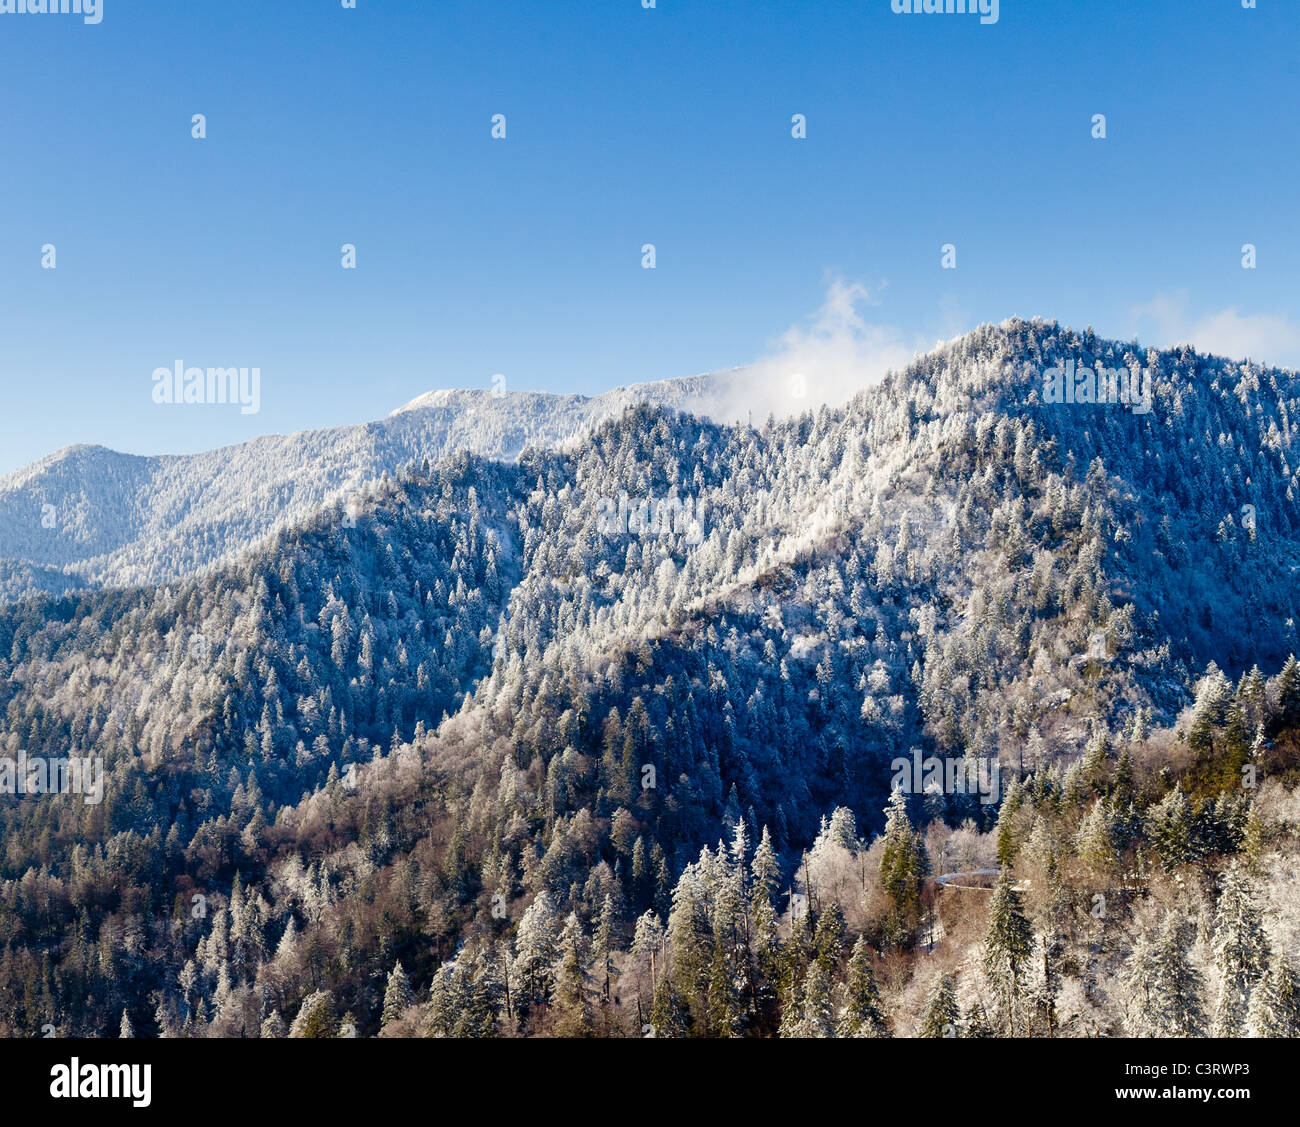 Famoso Smoky Mountain View del monte Leconte, Great Smoky Mountains National Park coperto di neve in primavera Foto Stock